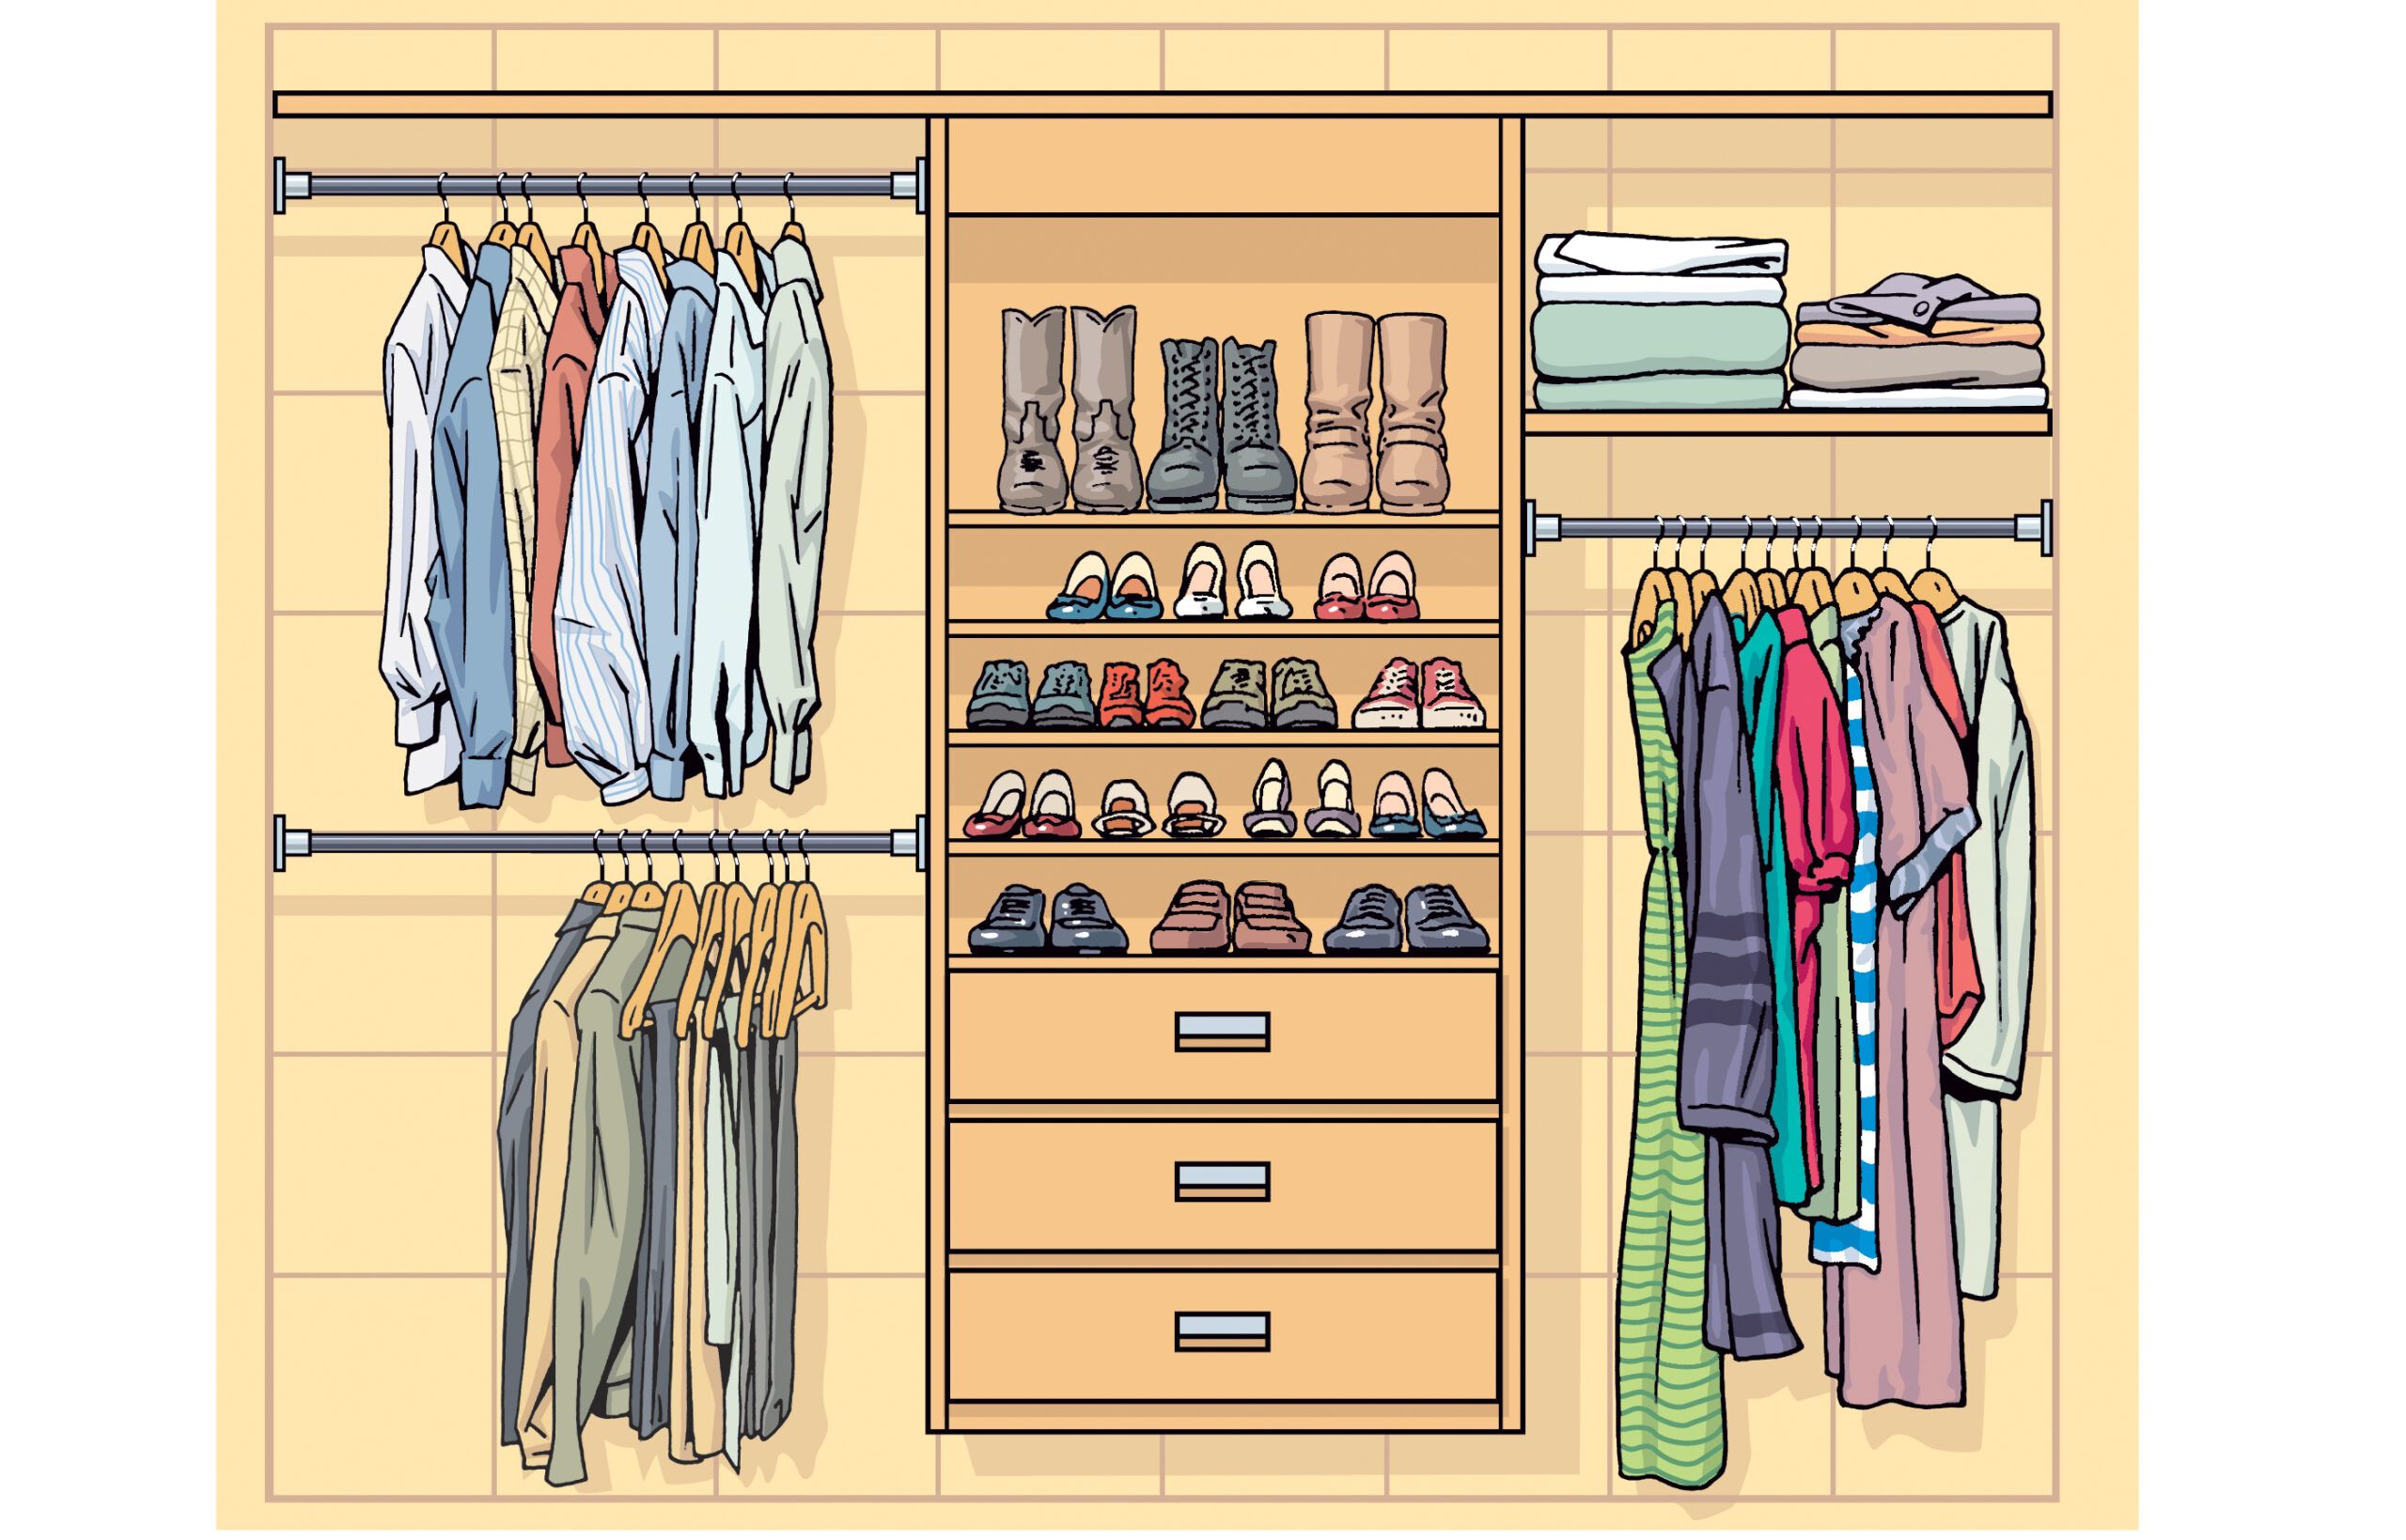 Floor-standing Corner Coat Rack Bedroom DIY Wardrobe Clothes